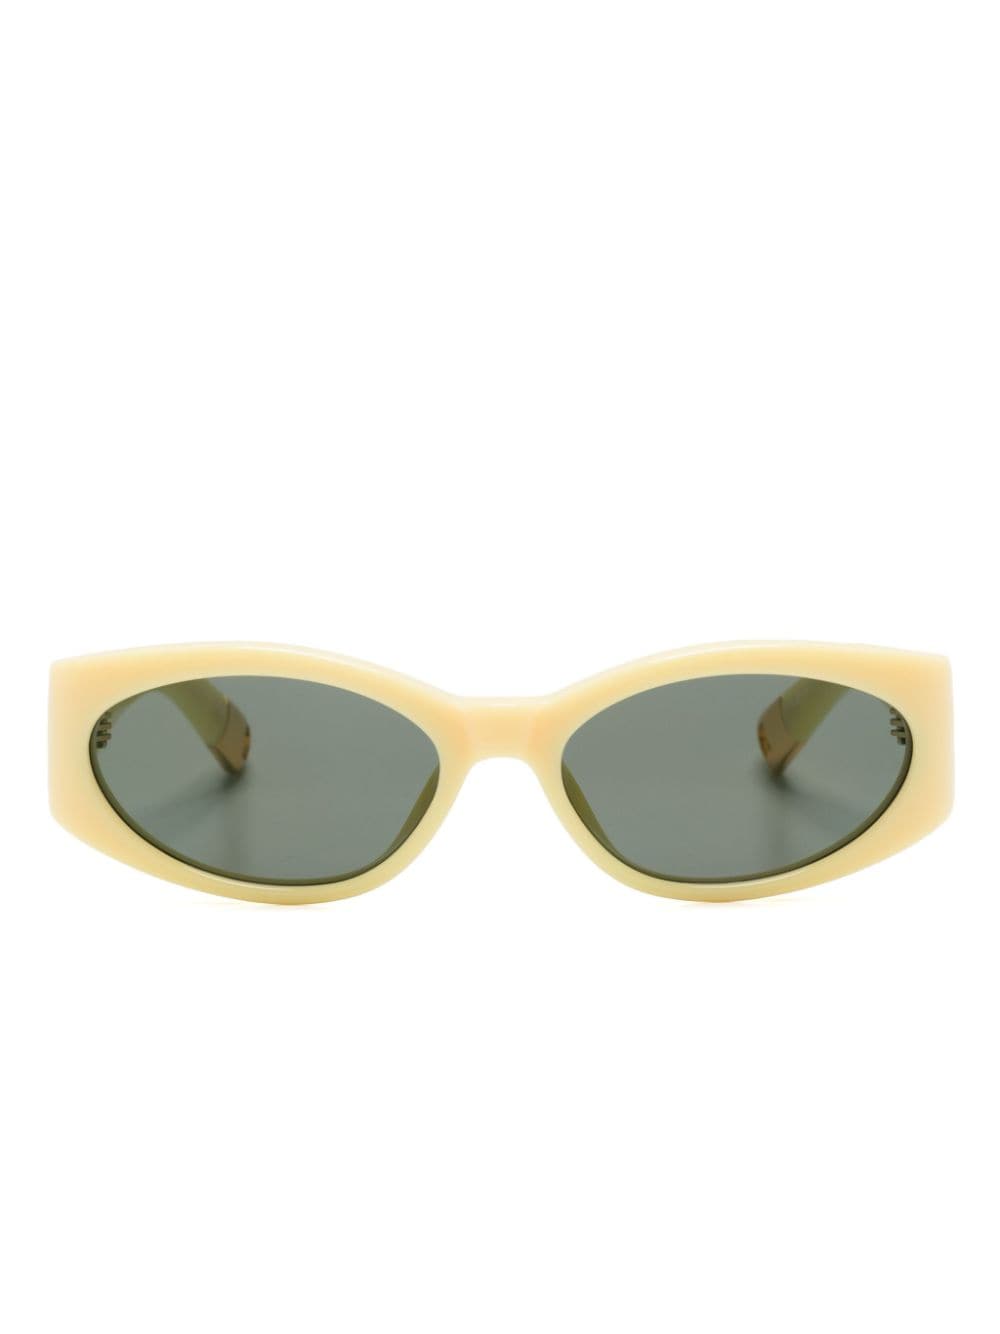 Jacquemus Les Lunettes oval-frame sunglasses - Yellow von Jacquemus